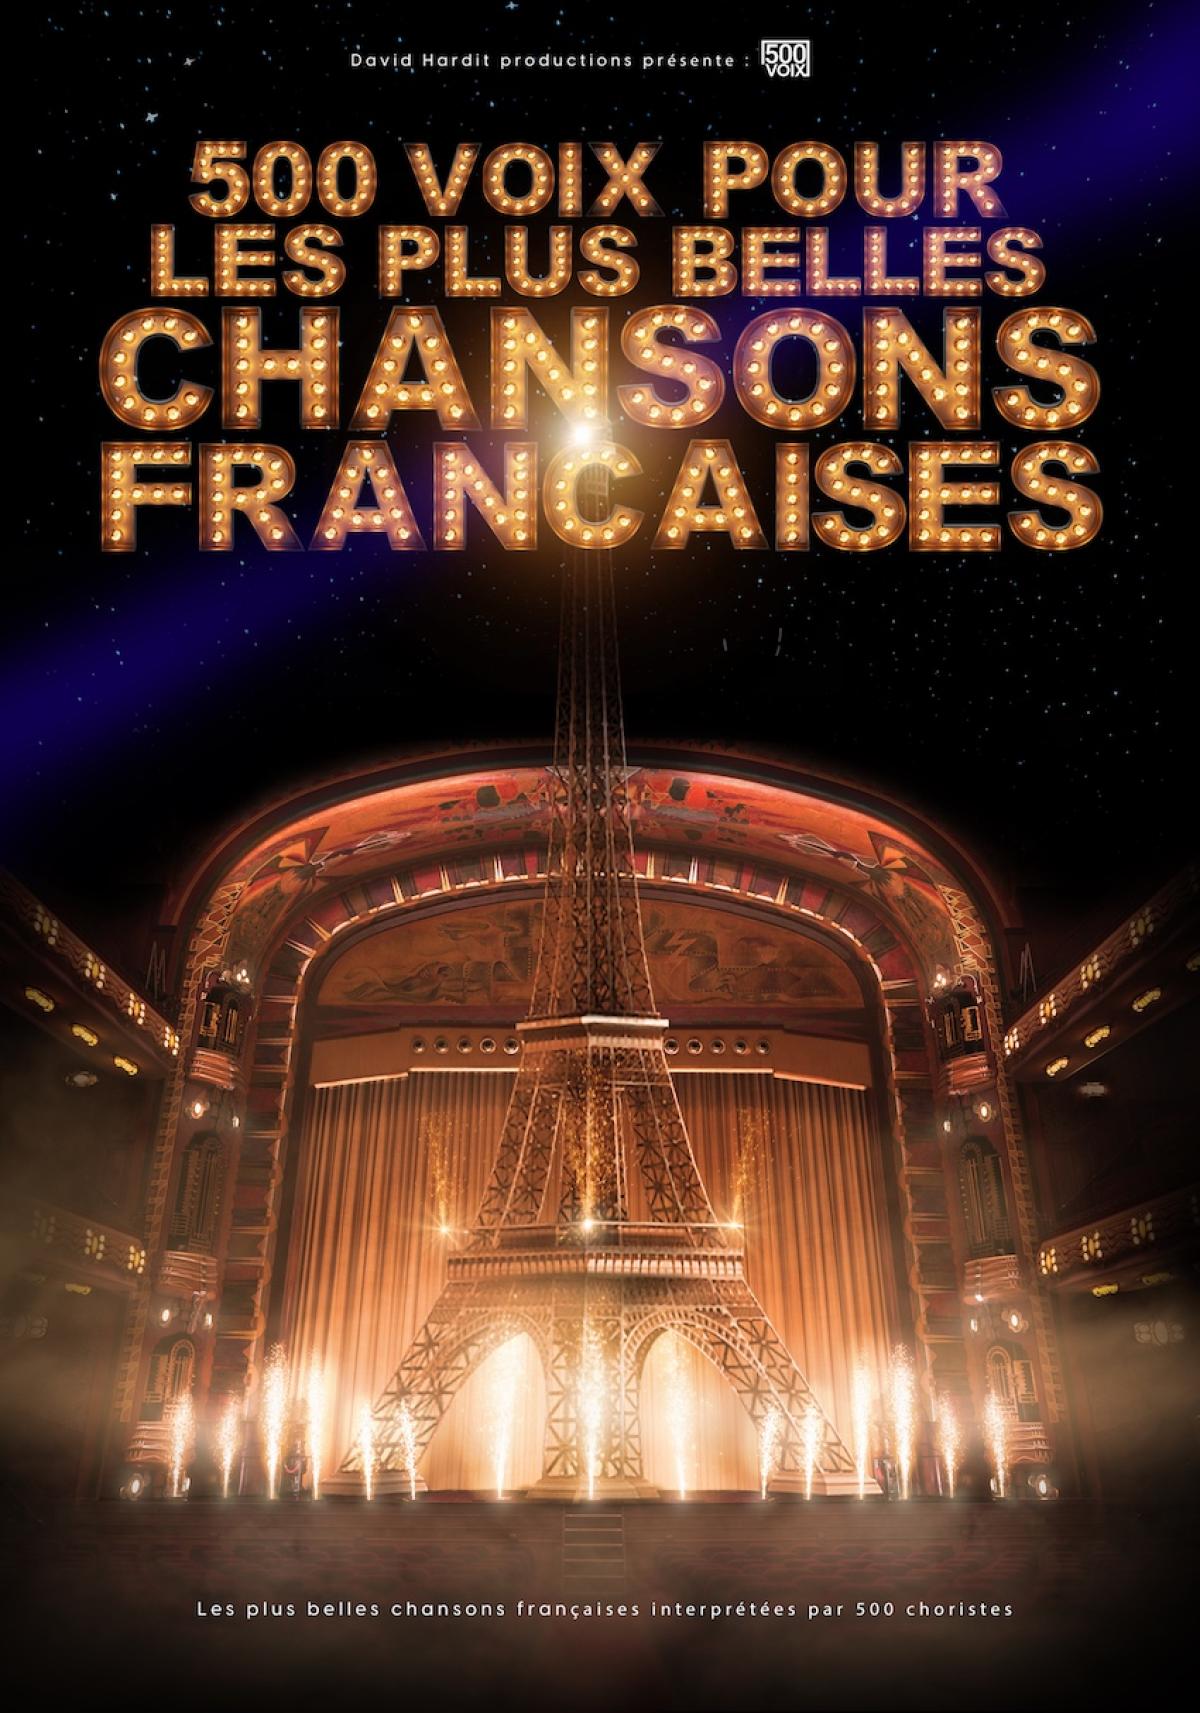 500 Voix Pour Les Plus Belles Chansons in der Arena Loire Tickets